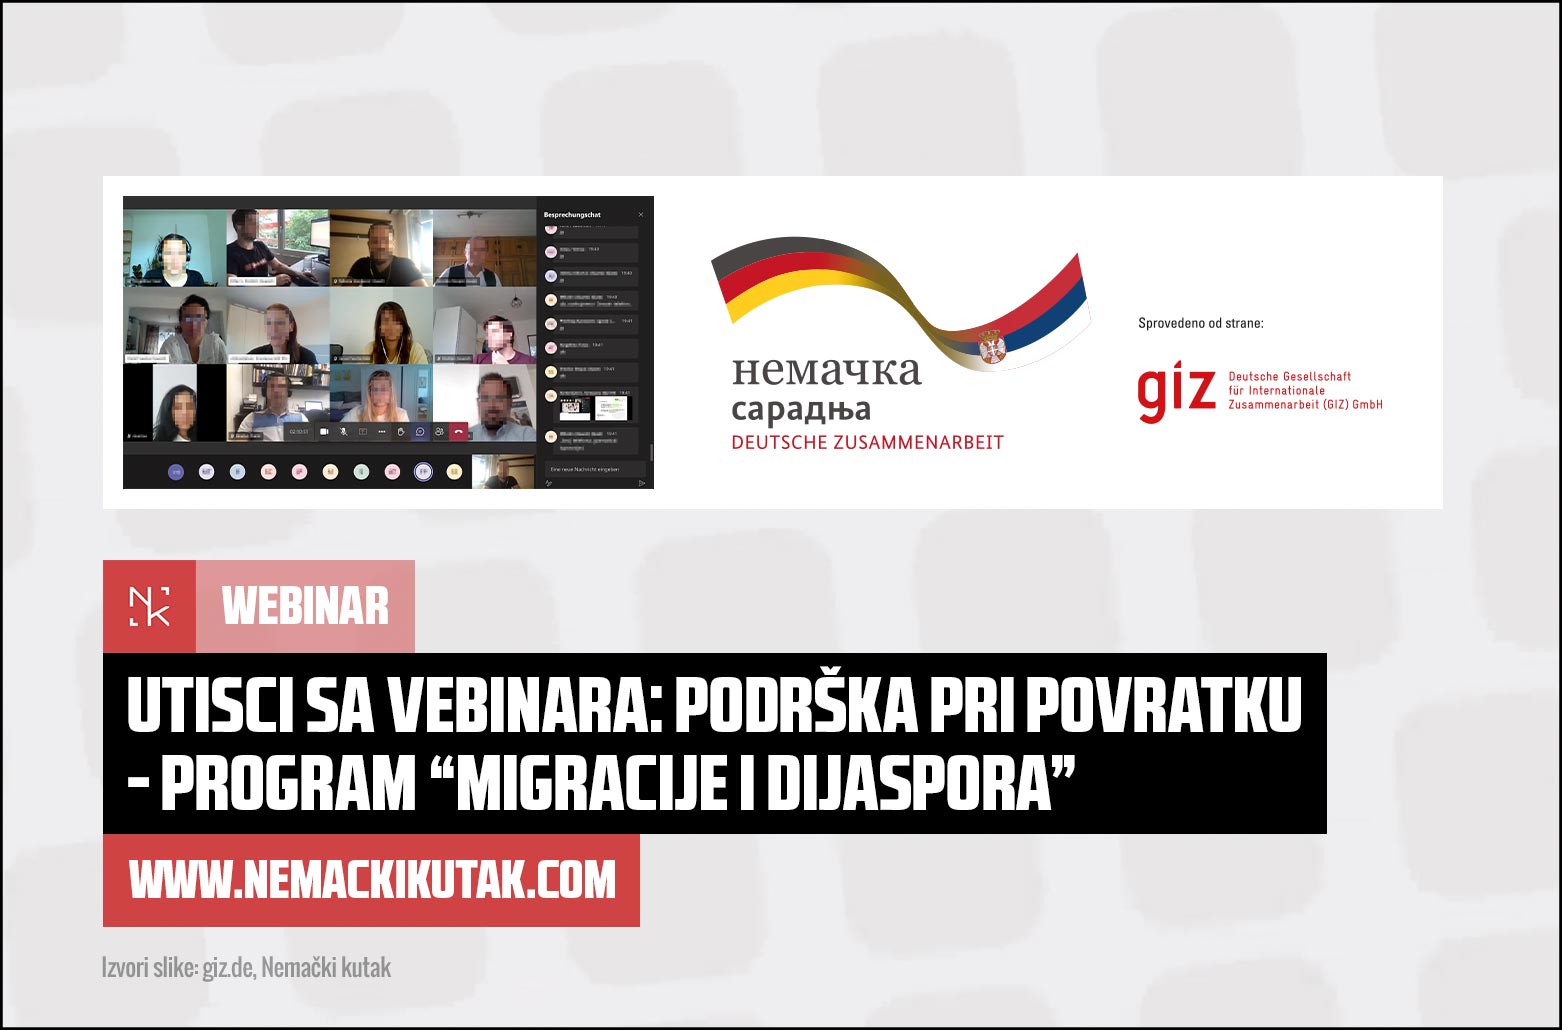 nk-odjava-giz-webinar-program-migracije-i-dijaspora-m